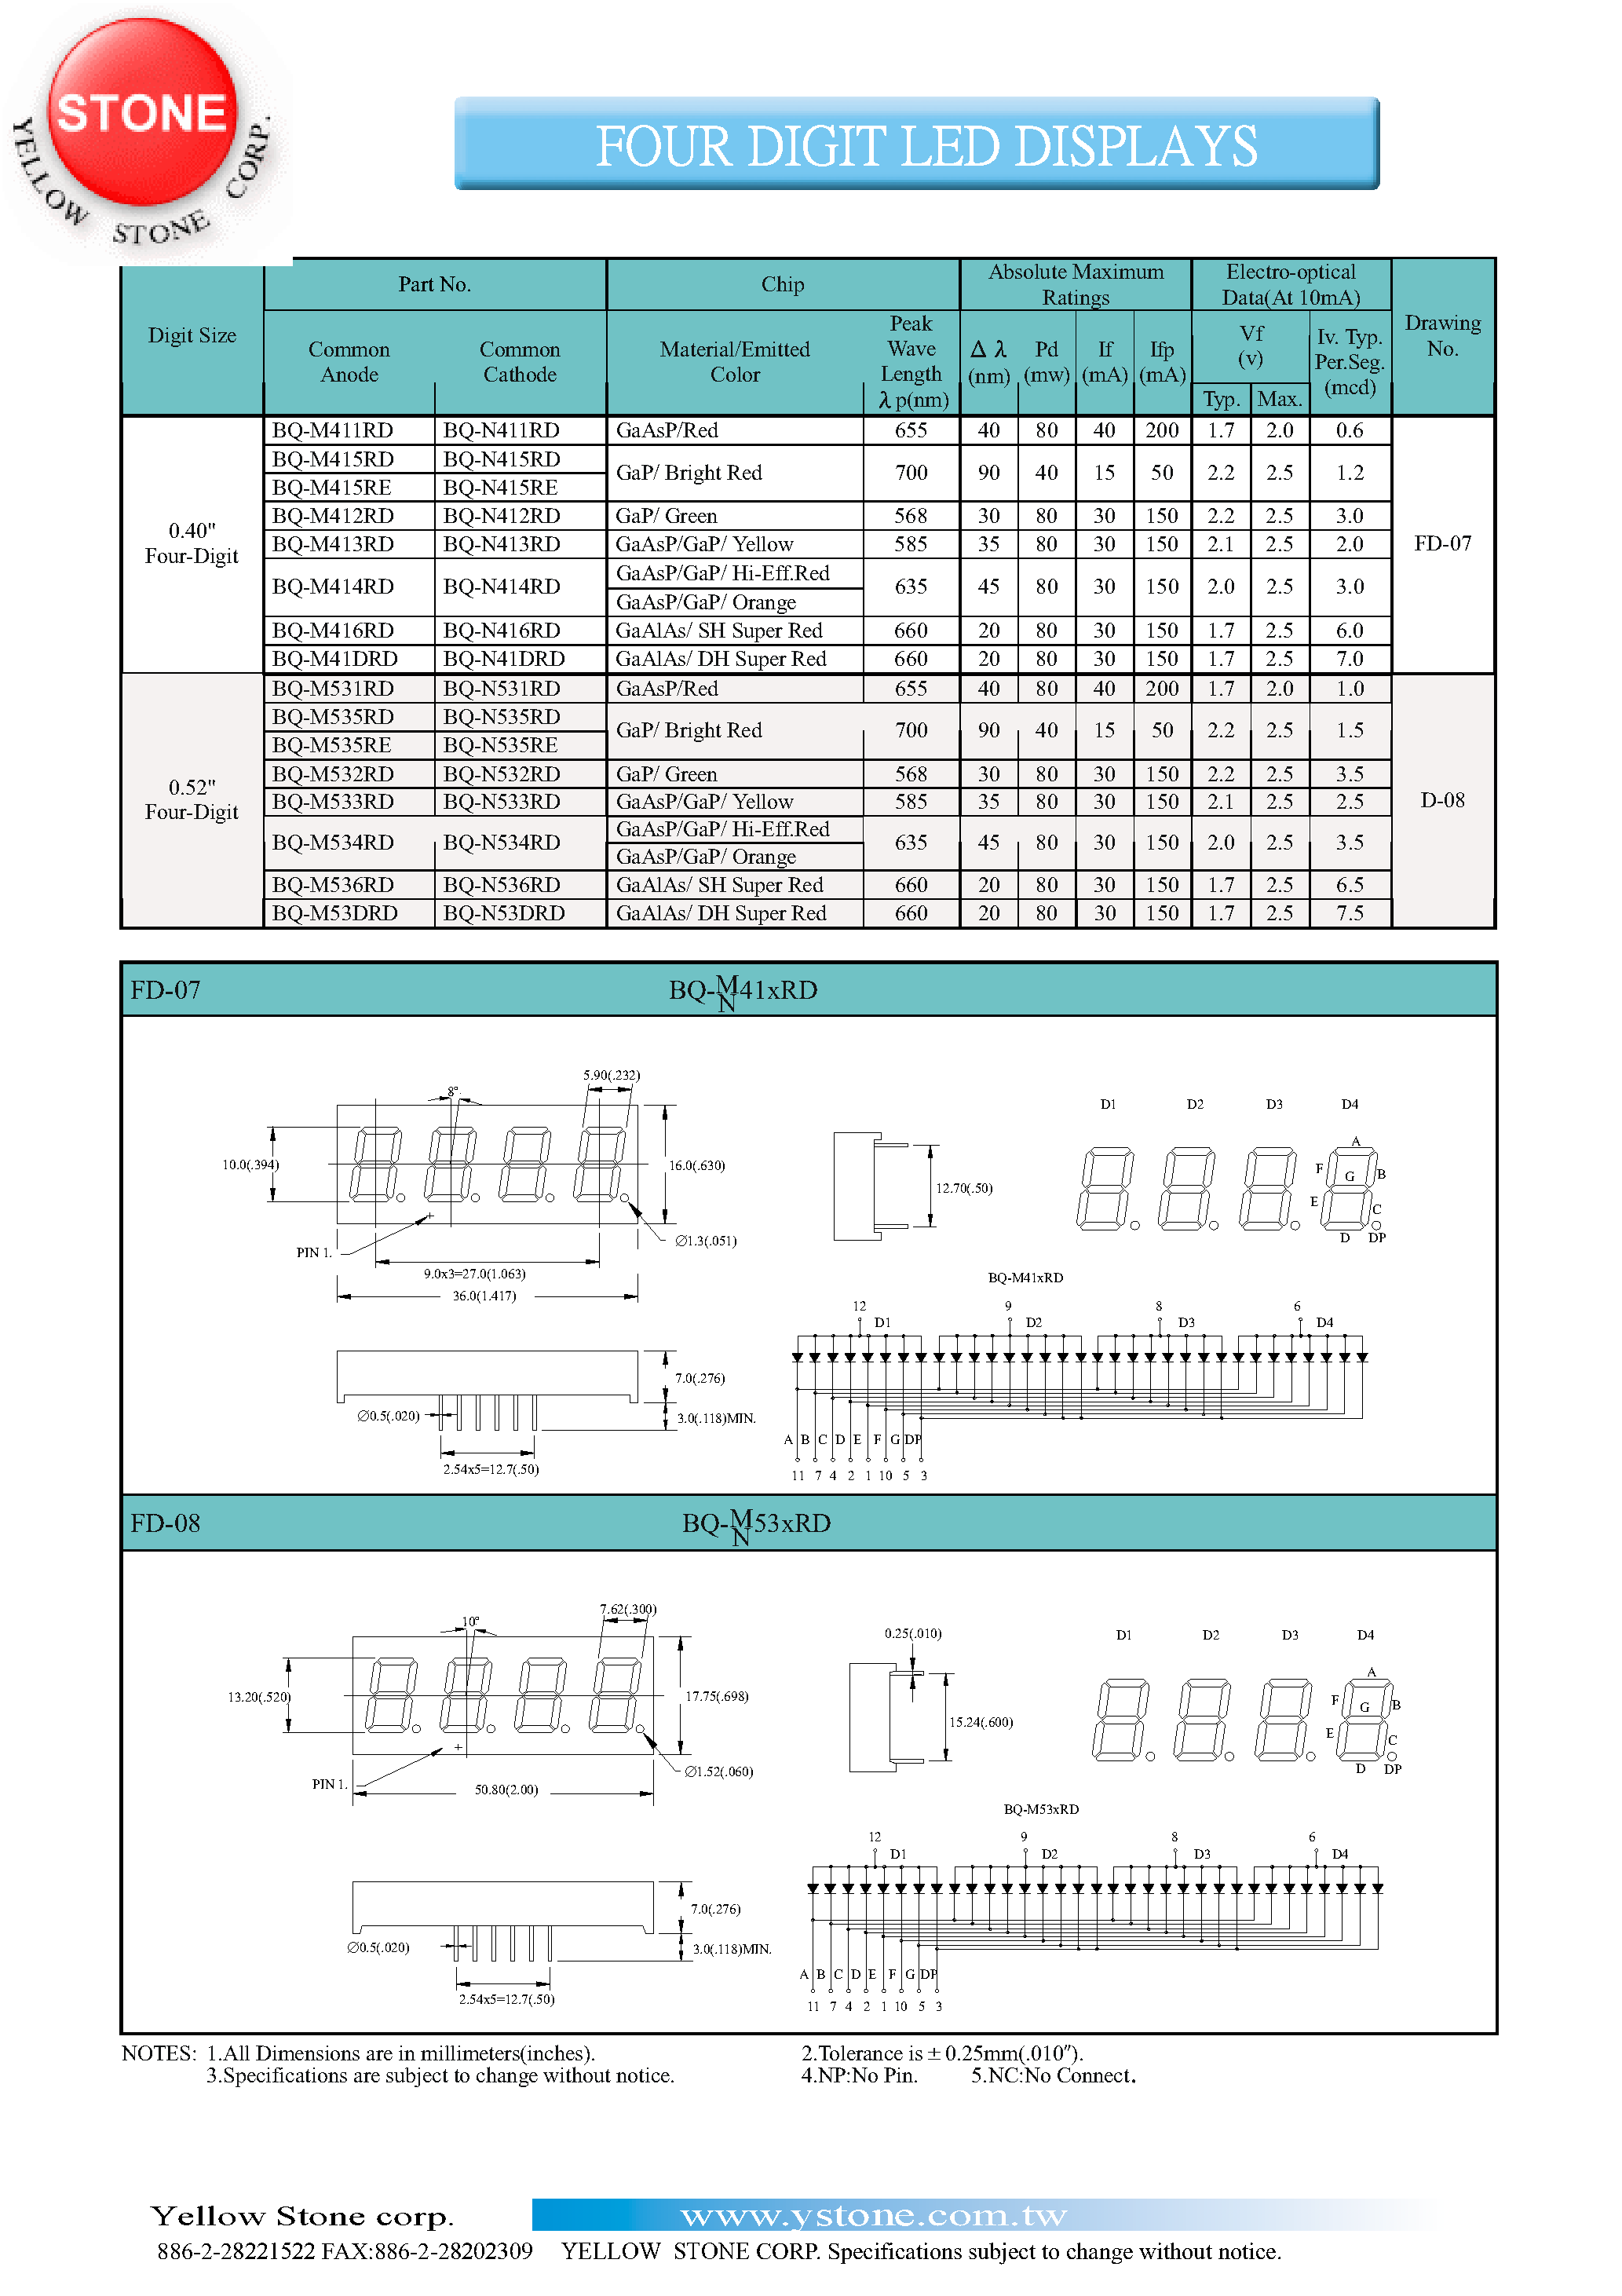 Datasheet BQ-M412RD - FOUR DIGIT LED DISPLAYS page 1